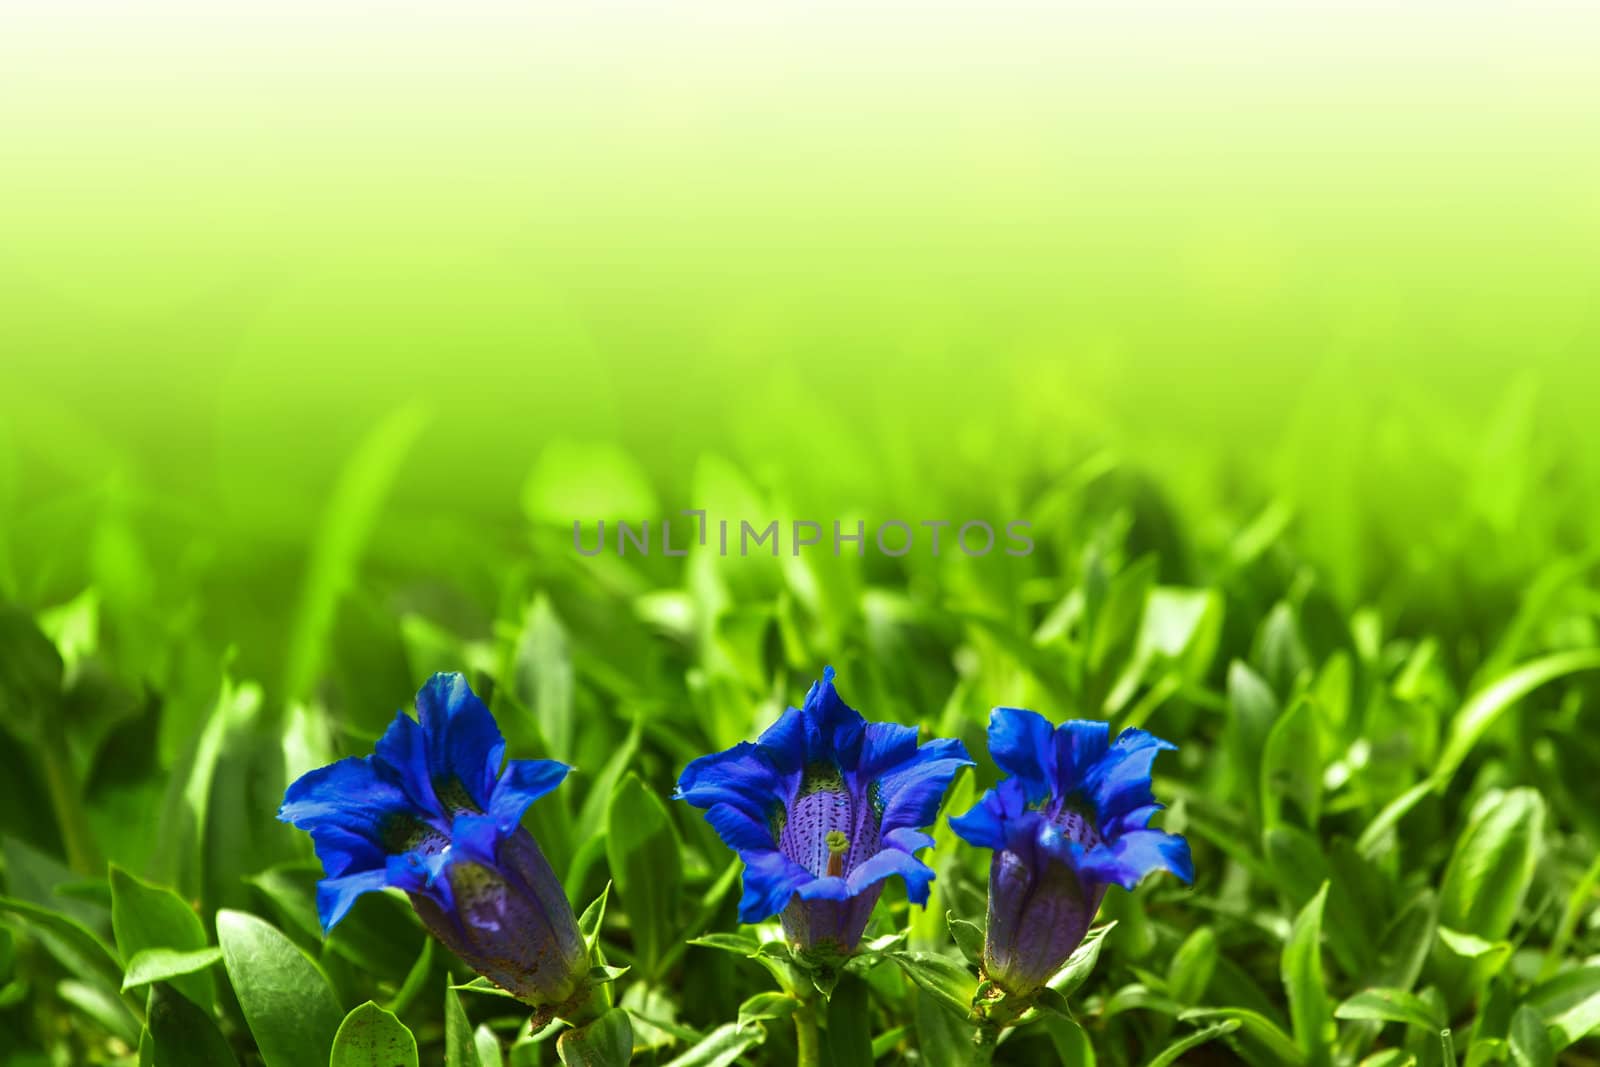 Trumpet gentiana blue spring flower in garden for background